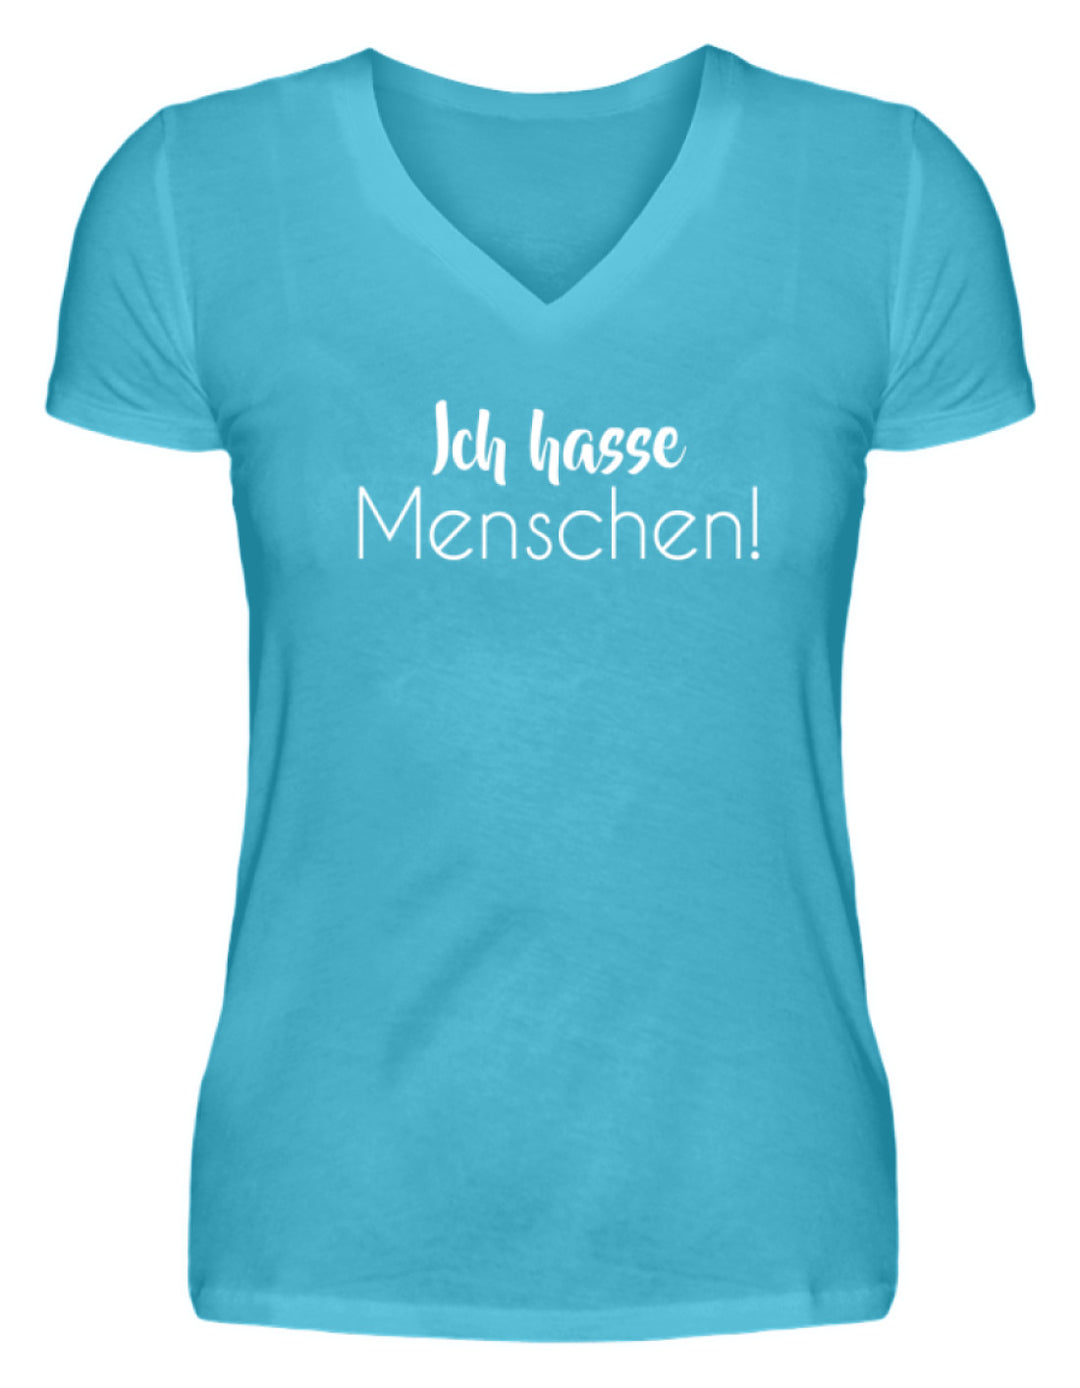 Ich hasse Menschen - Girls only  - V-Neck Damenshirt - Words on Shirts